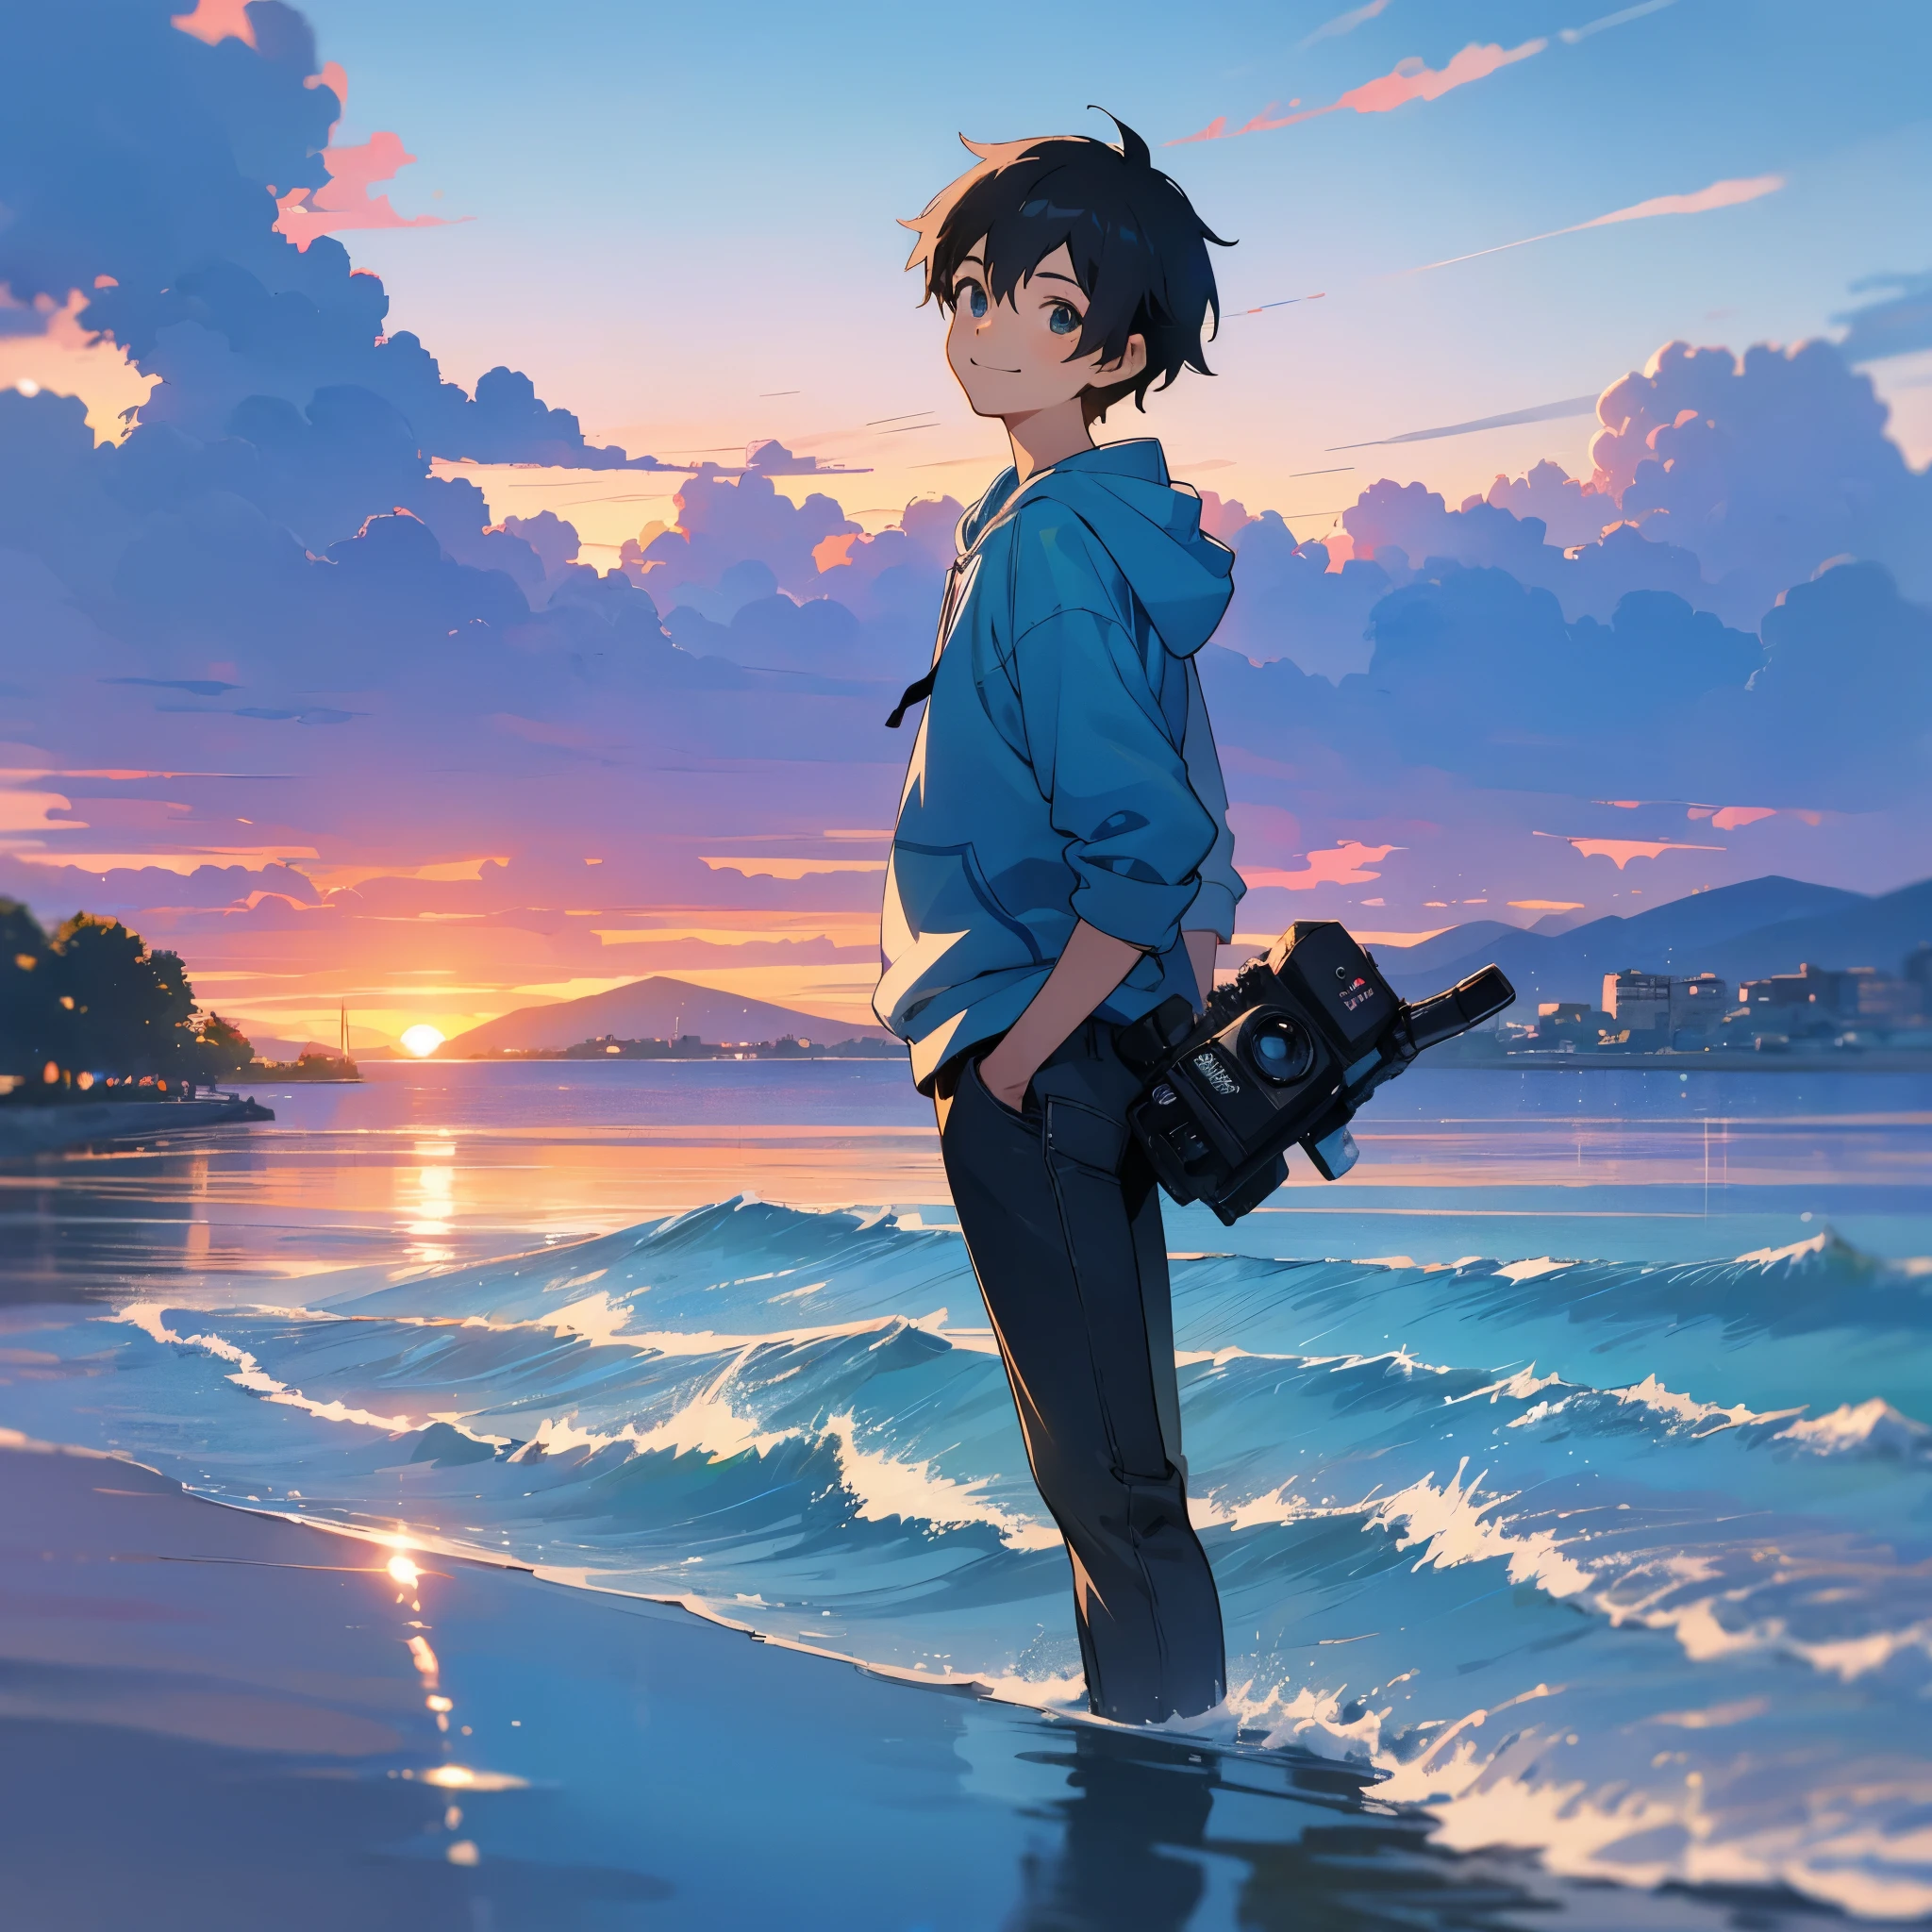 Anime - Entlang des Meeres, ein Junge, der Junge fotografiert mit einer alten Kamera, der Junge trägt einen blauen Kapuzenpullover und schwarze Jeans, Mit Blick in die Kamera, lächelnd, Makoto Shinkai-Stil, blassblauer Himmel, blassblaues Meer, ultrahohe Qualität, Extrem detailliert, Detailliertes Gesicht, Sonnenuntergang